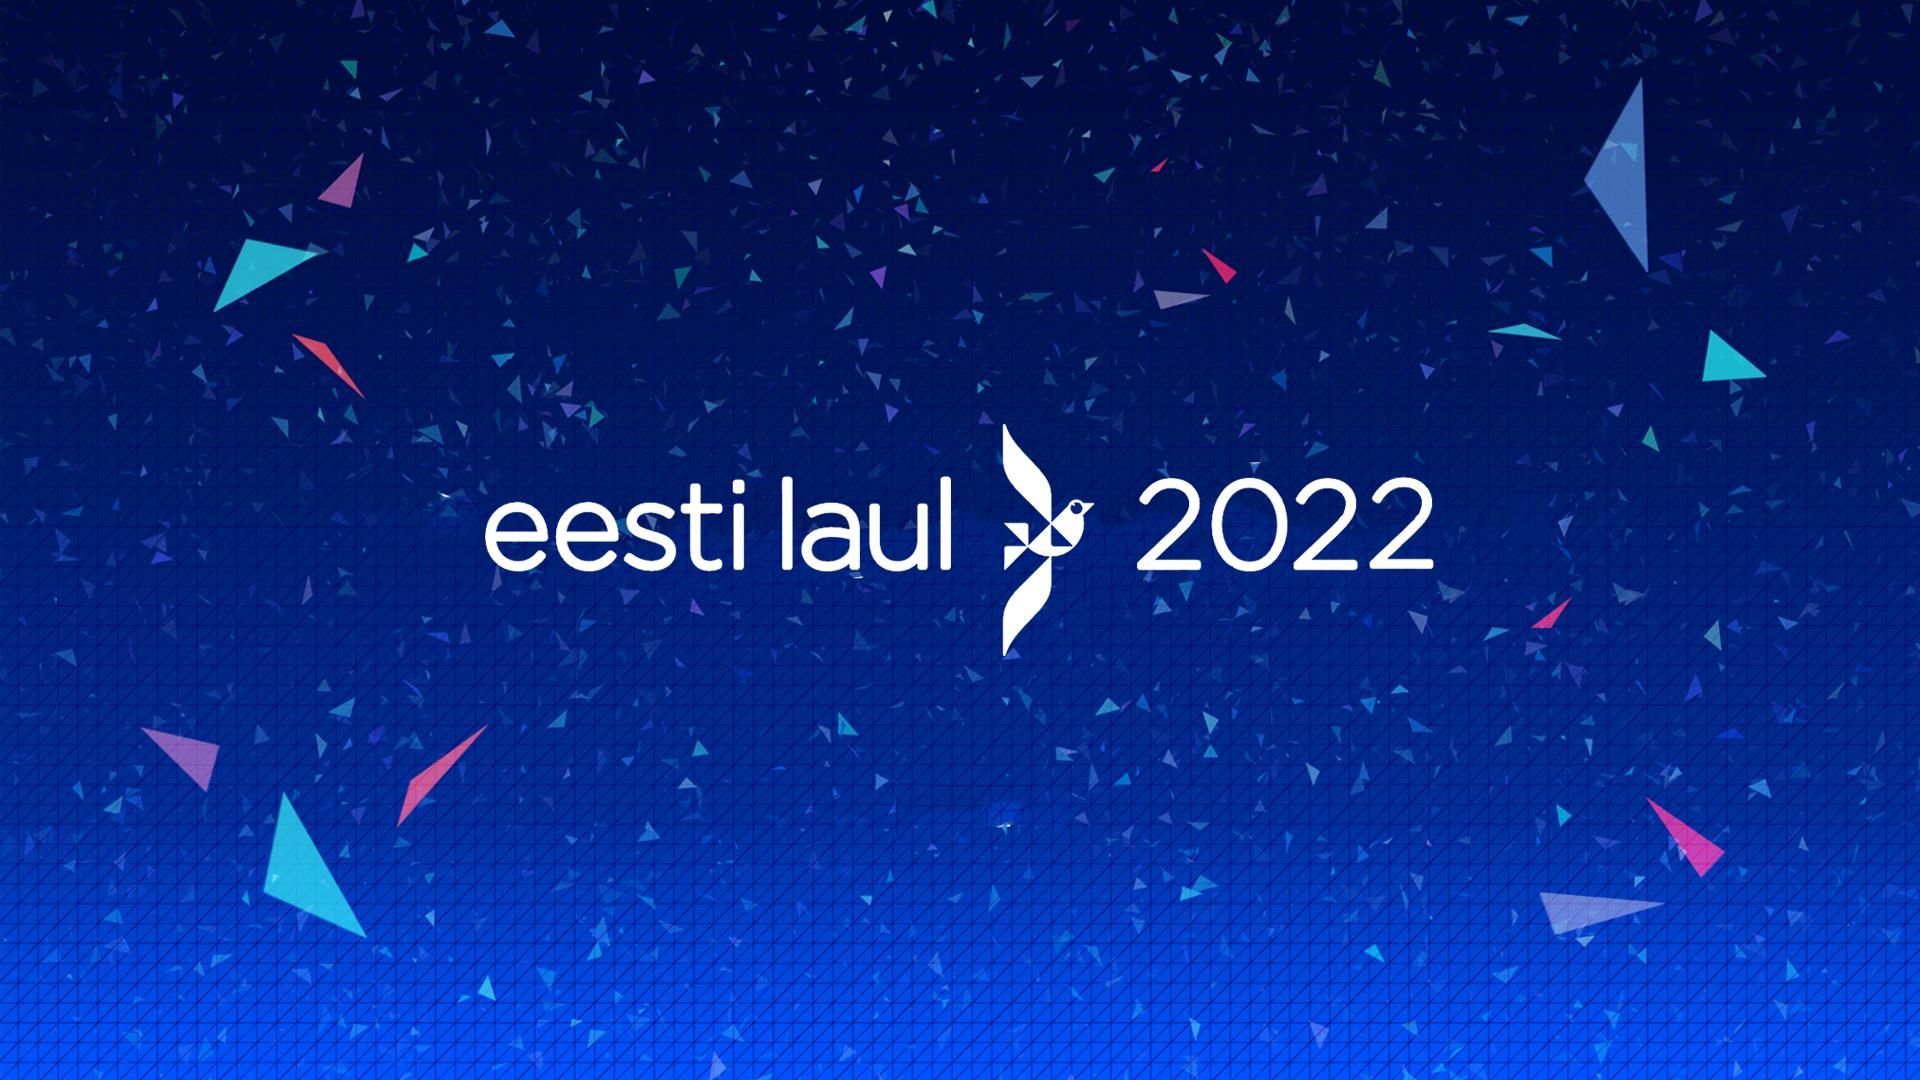 Eesti Laul 2022: Esta noche la segunda gala de cuartos de final